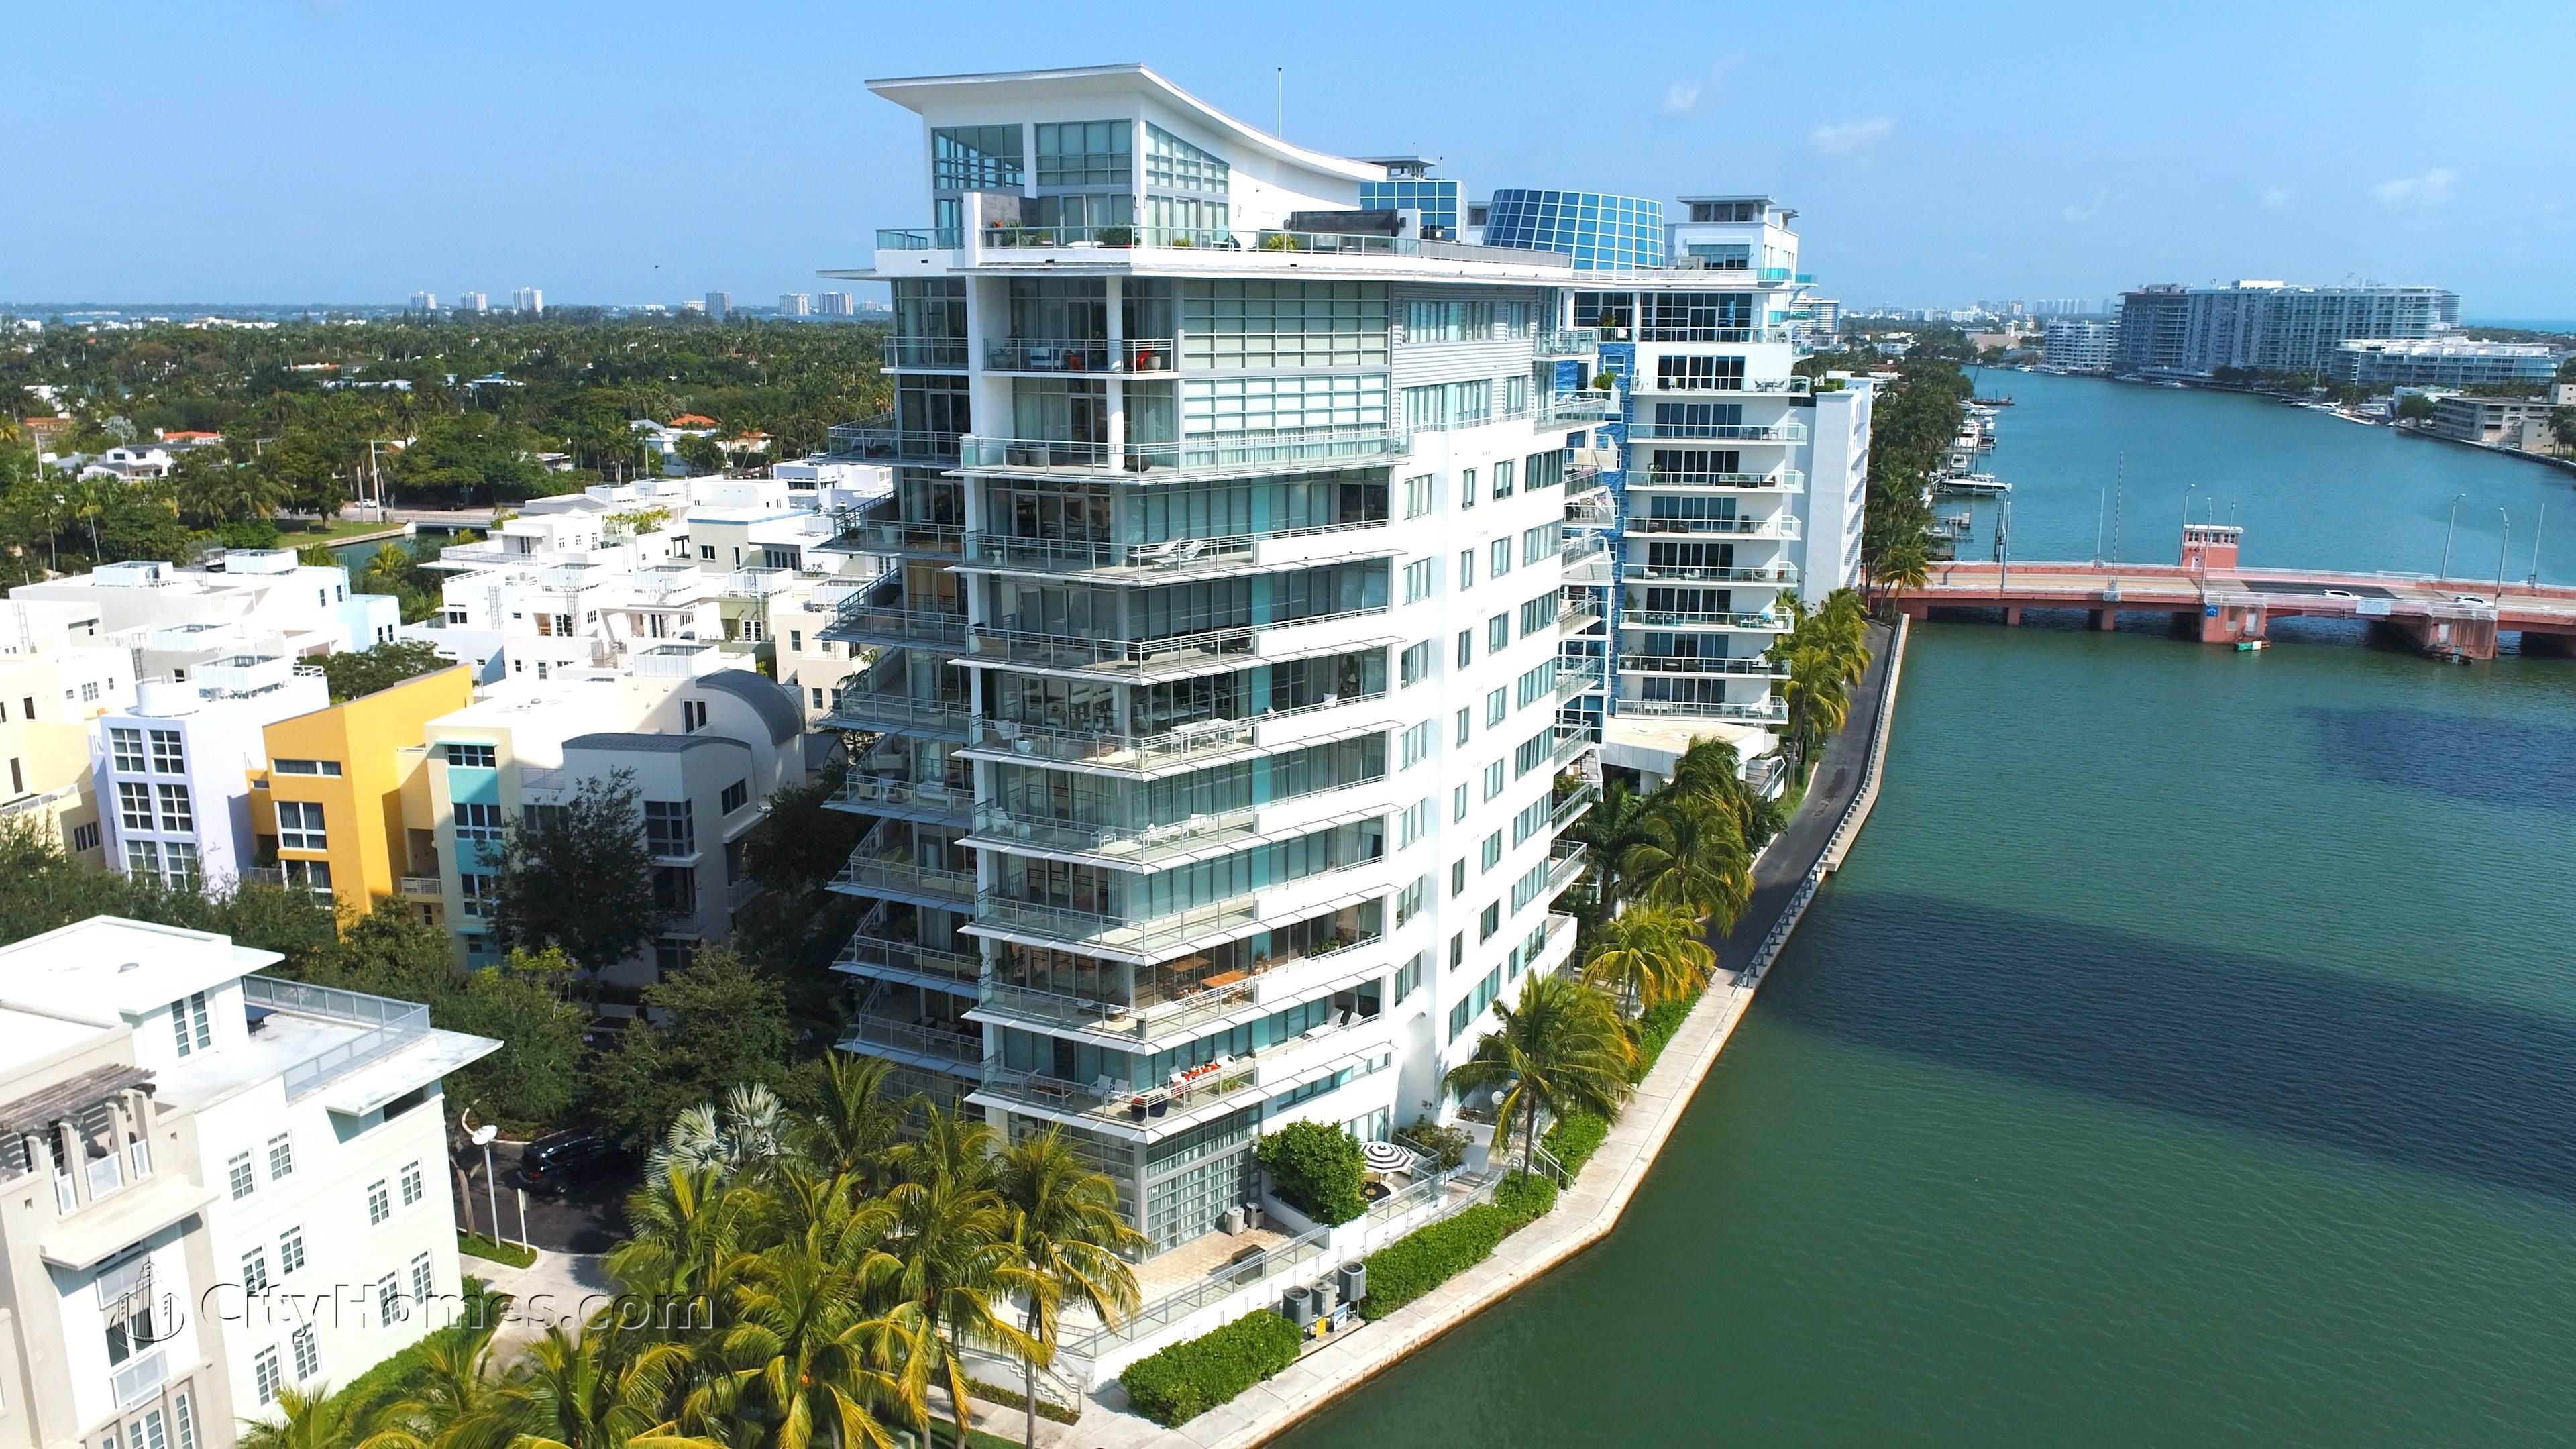 AQUA ALLISON ISLAND - GORLIN BUILDING здание в 6101 Aqua Avenue, Miami Beach, FL 33141